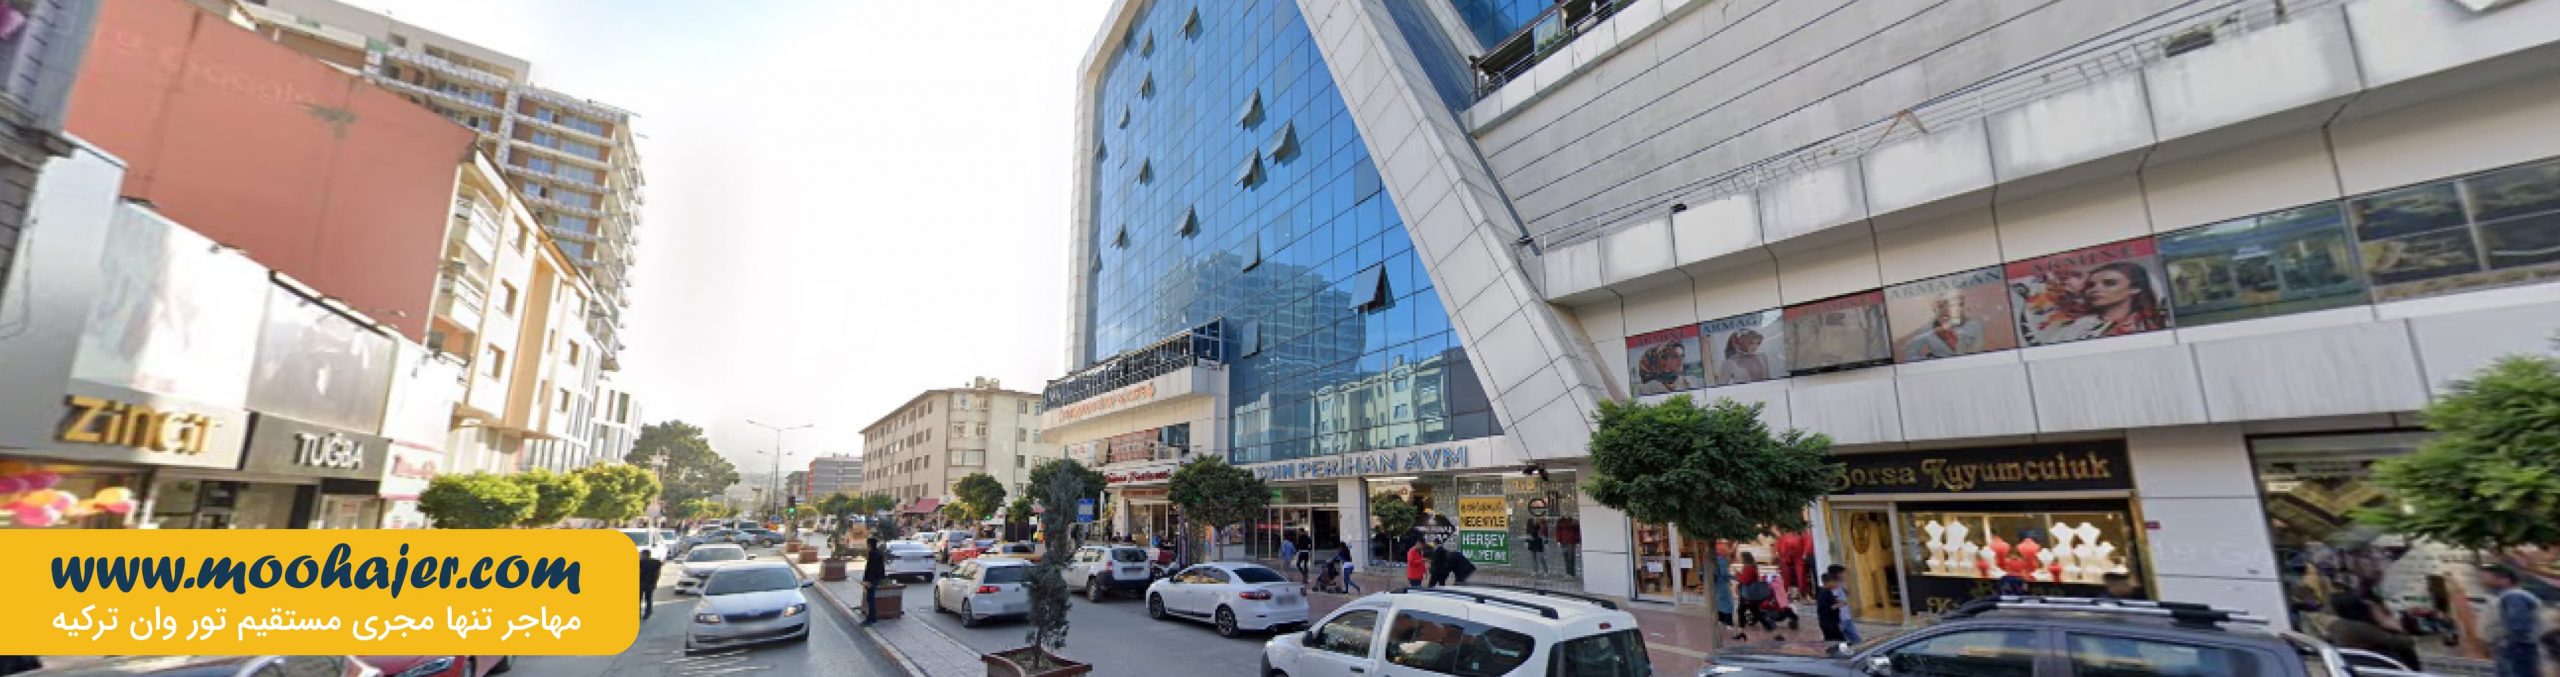 مرکز خرید آیدین پریهام | مراکز خرید وان | مهاجر سیر ایرانیان